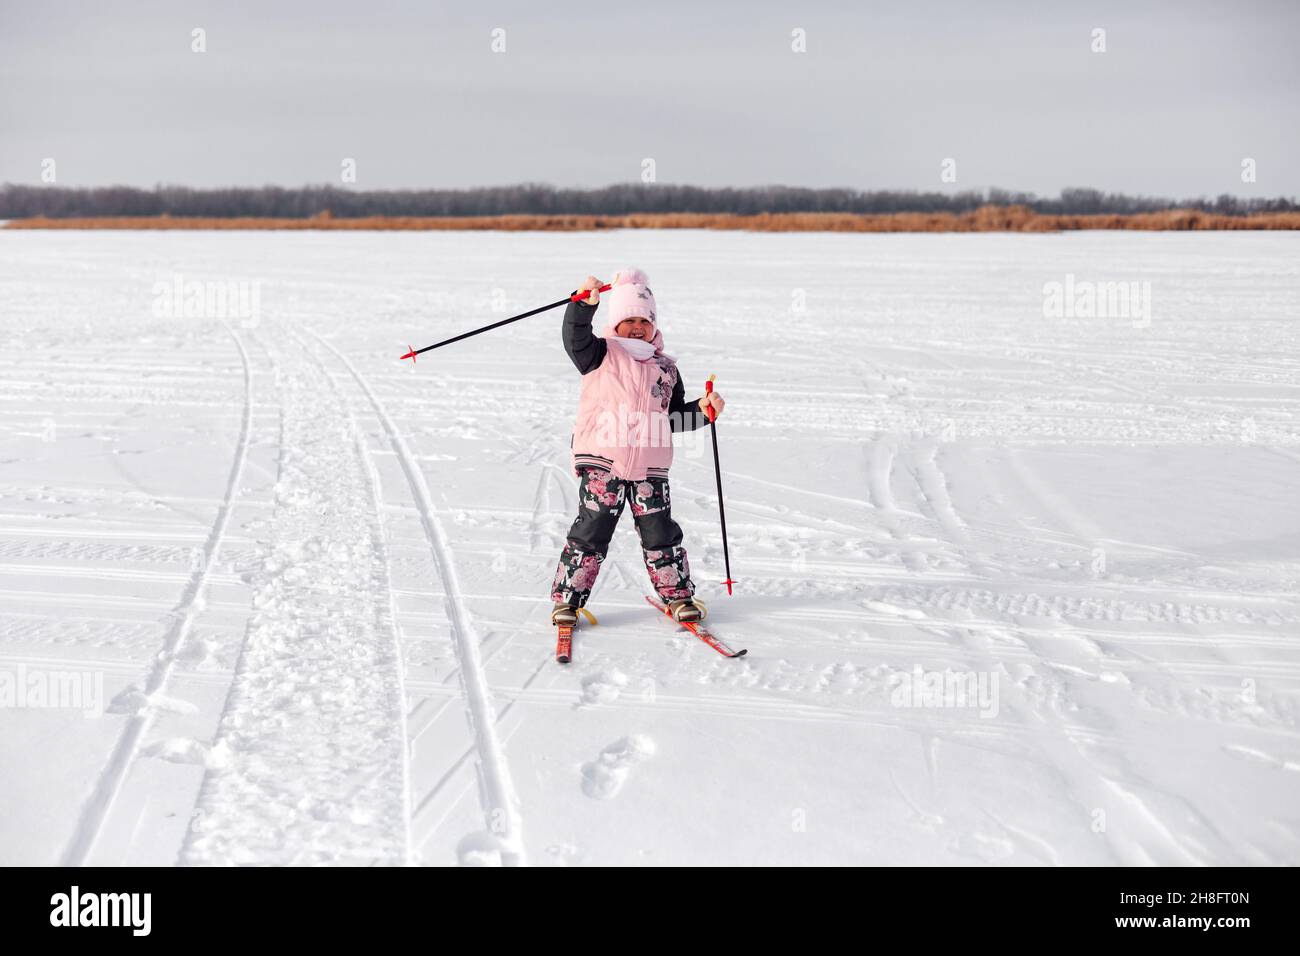 Kind fährt im Schnee Ski. Glückliches Mädchen im warmen Trainingsanzug lernt auf gefrorenem Flussufer Ski zu fahren und winkt ihre Hand, Winterlandschaft, verschneiten Hintergrund Stockfoto